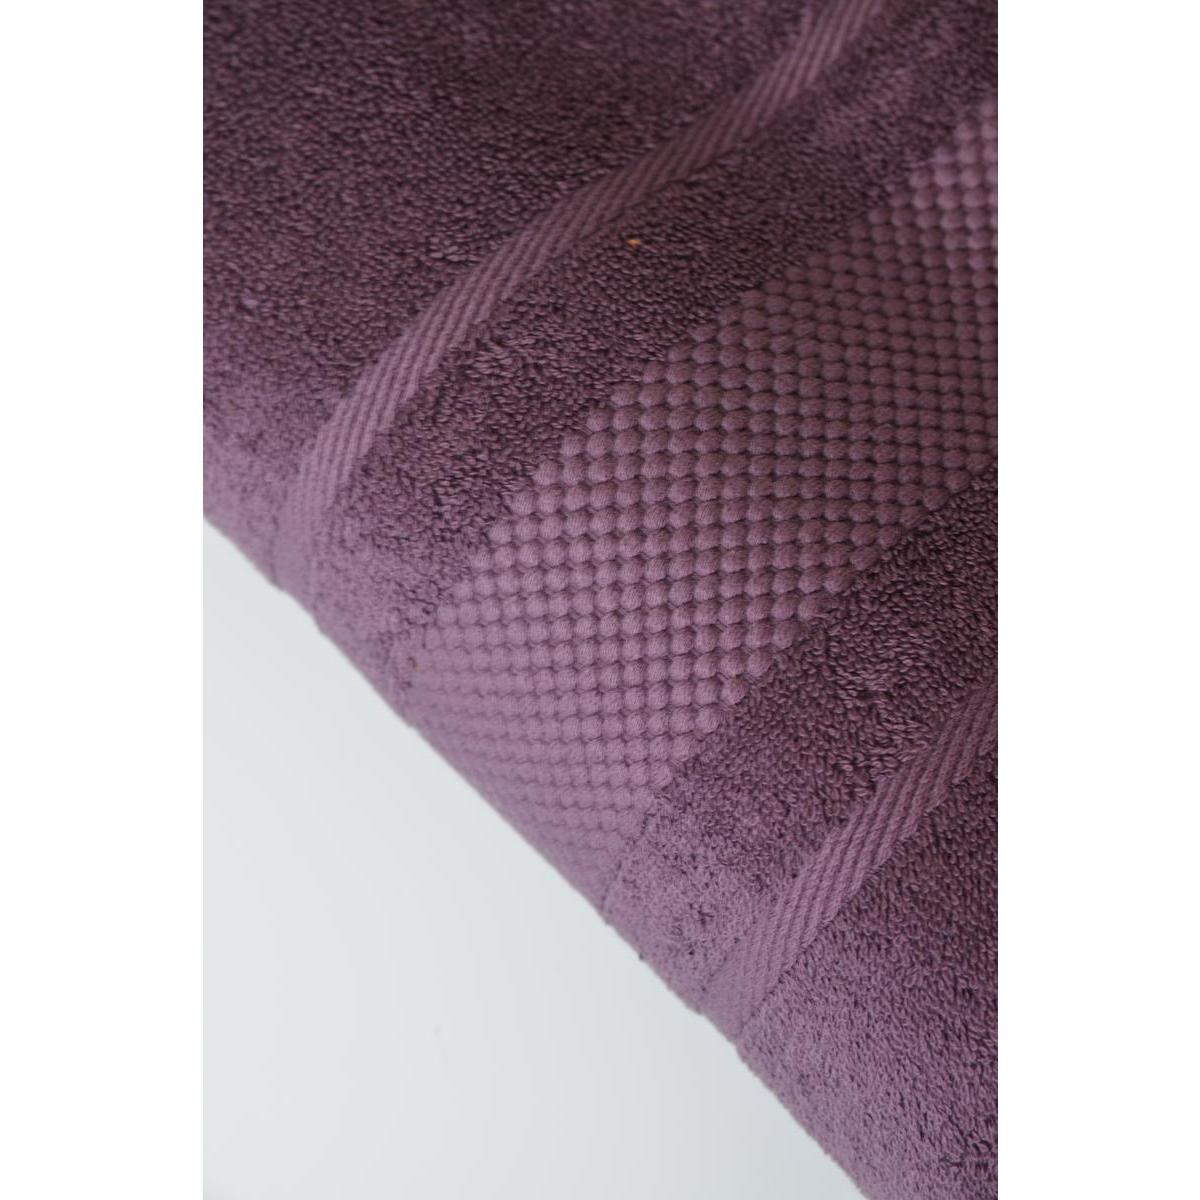 Serviette invité 100% coton peigné 30 x 50 cm - violet